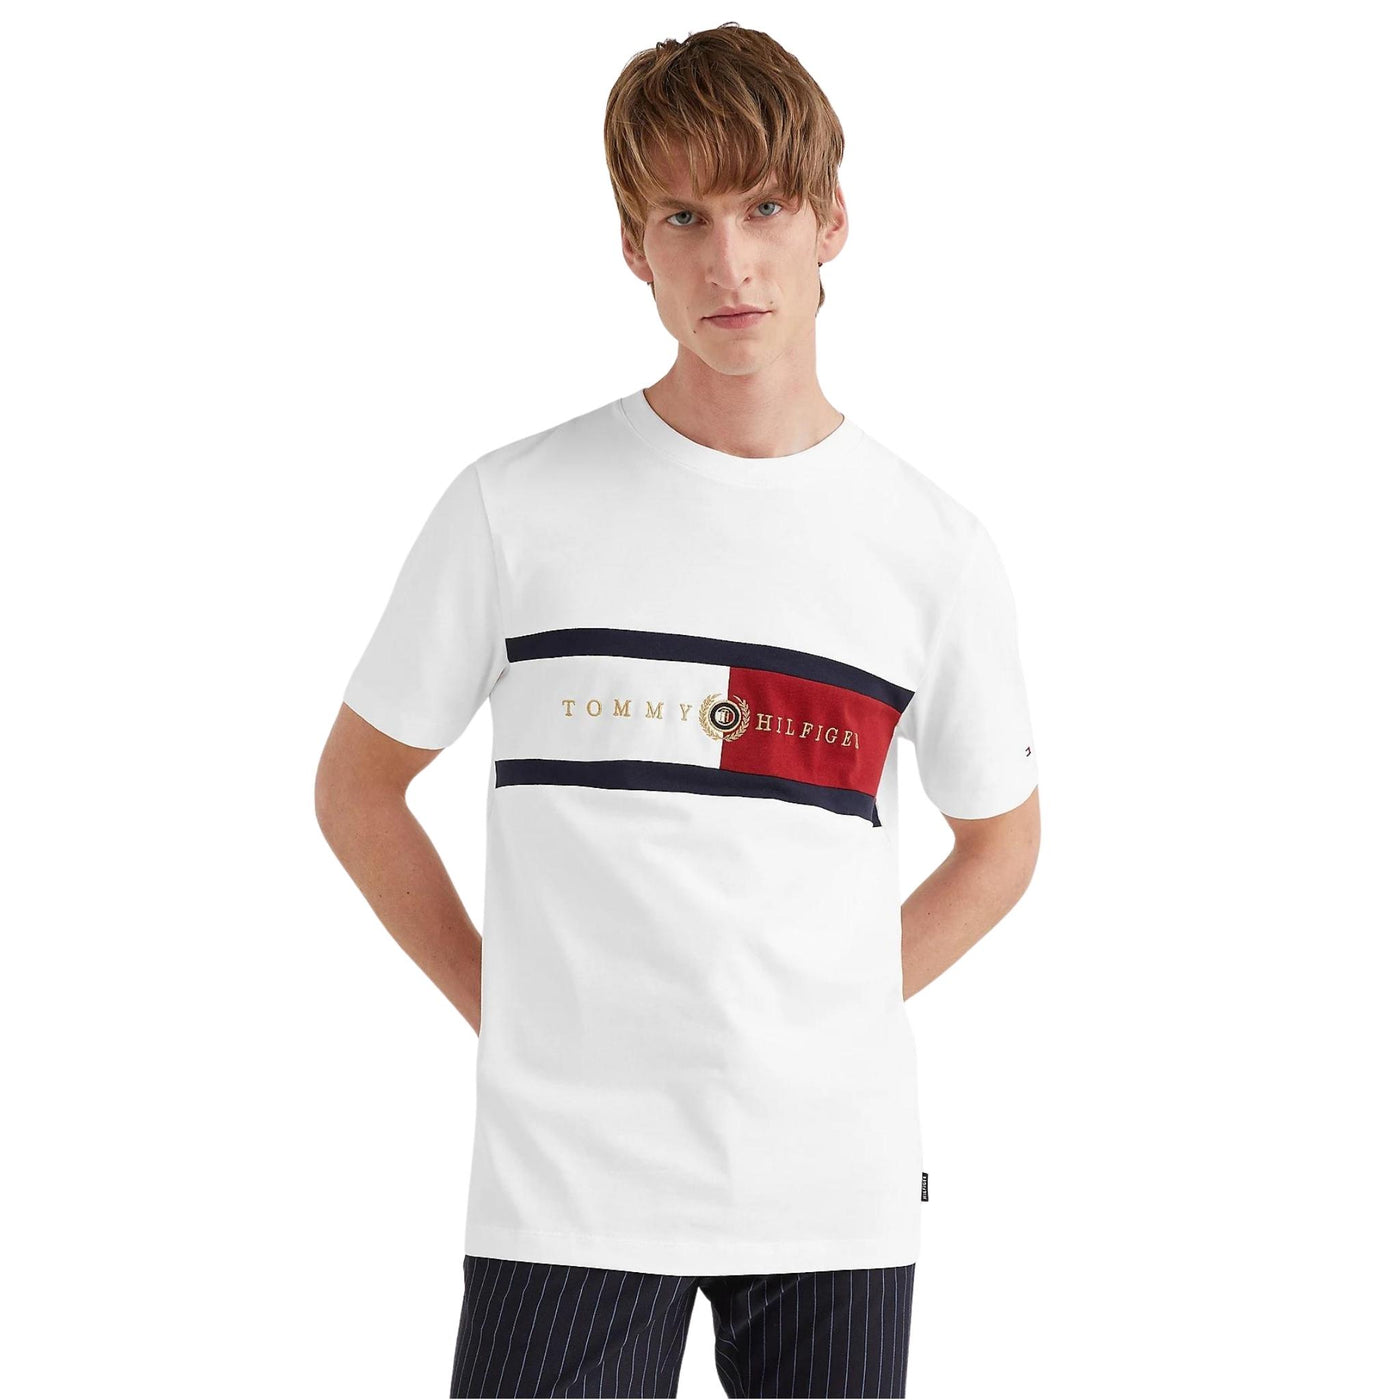 T-shirt da uomo firmata Tommy Hilfiger in cotone con bandierina brand frontale e girocollo bianco indossata